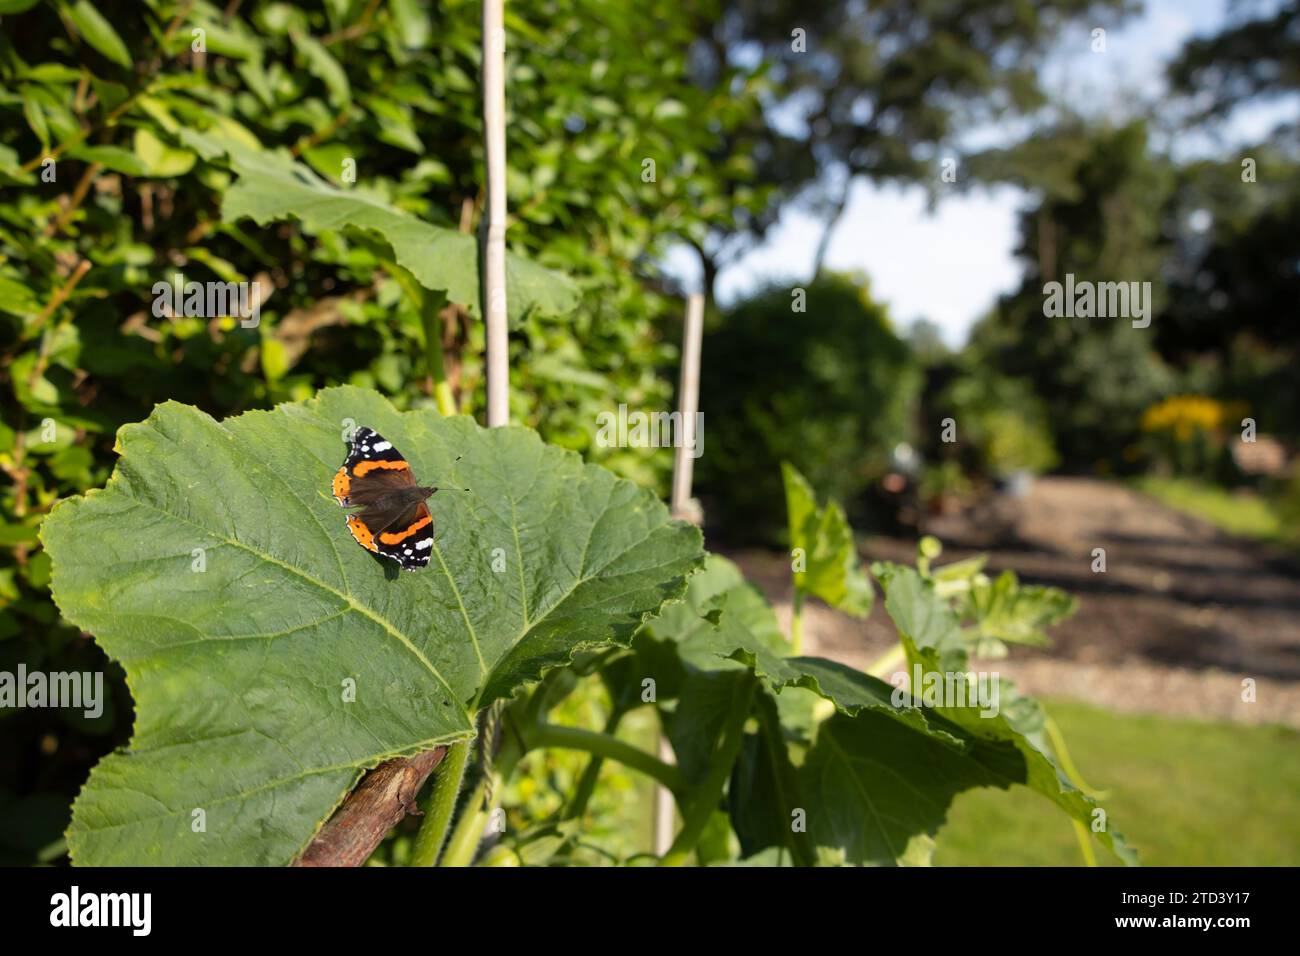 Ammiraglio rosso (Vanessa atalanta) farfalla adulto che riposa su una foglia di pianta di zucca del giardino, Suffolk, Inghilterra, Regno Unito Foto Stock